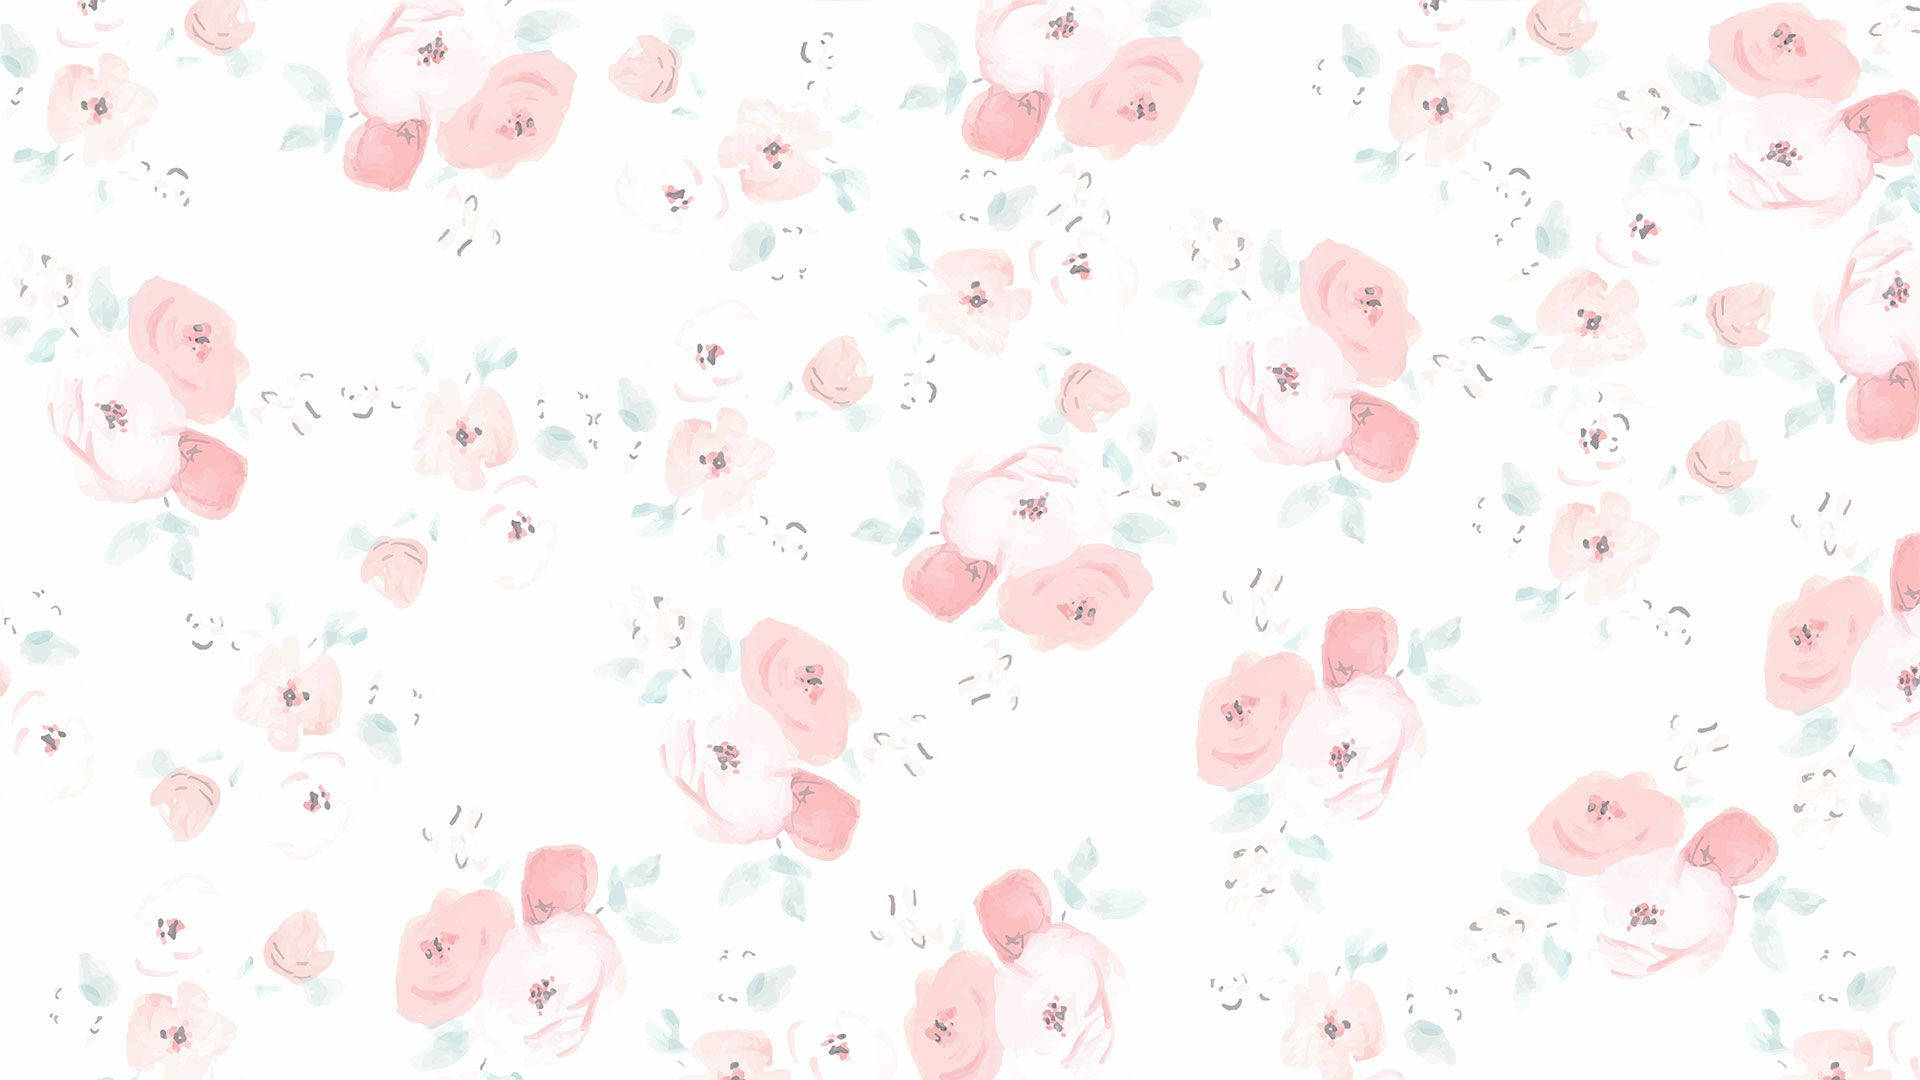 Floral Desktop Wallpaper Images  Free Download on Freepik